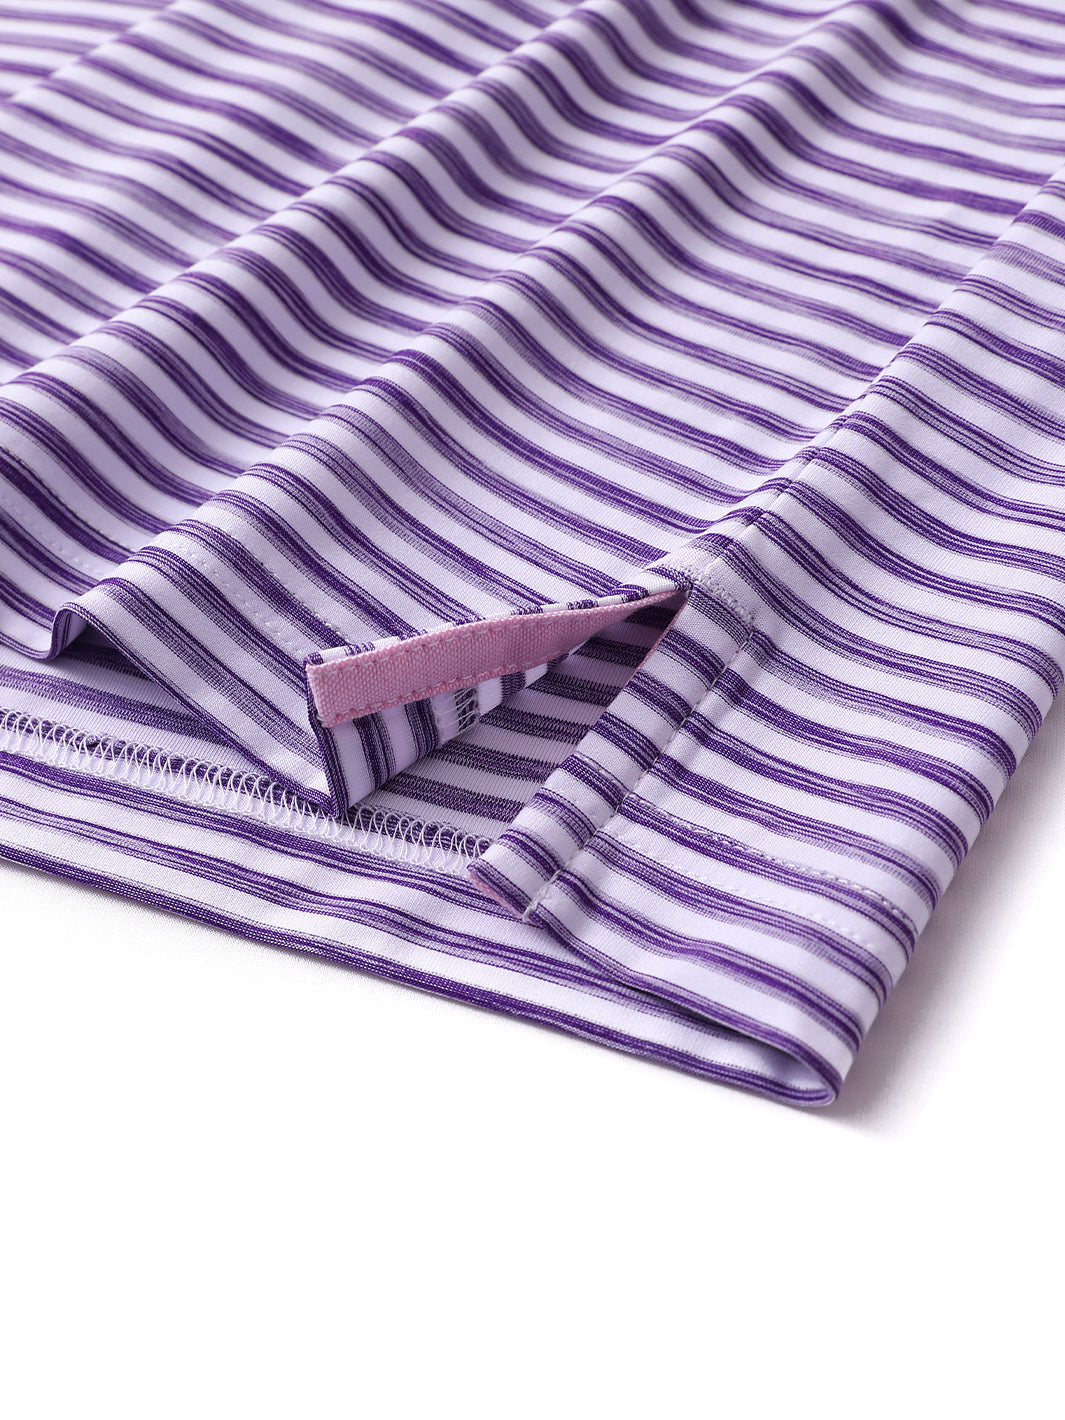 Men's Striped Golf Polo Shirts-Purple White